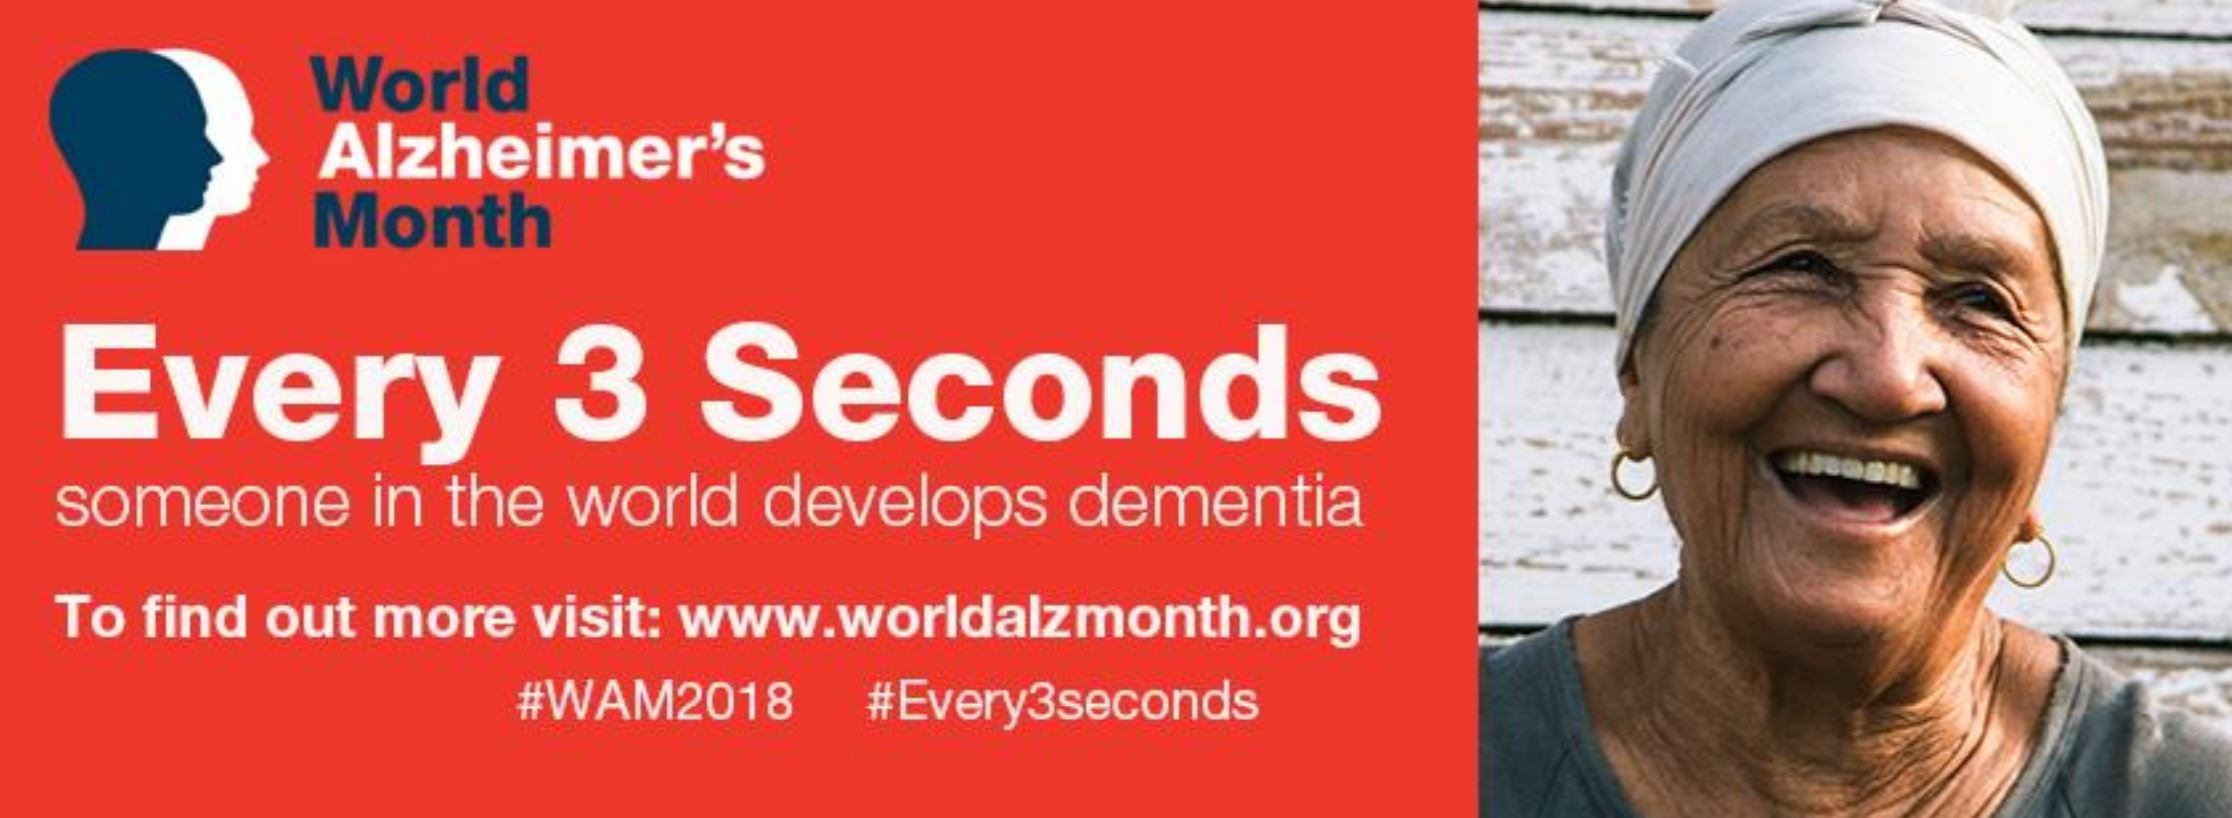 Join us for World Alzheimer's Month September 2018